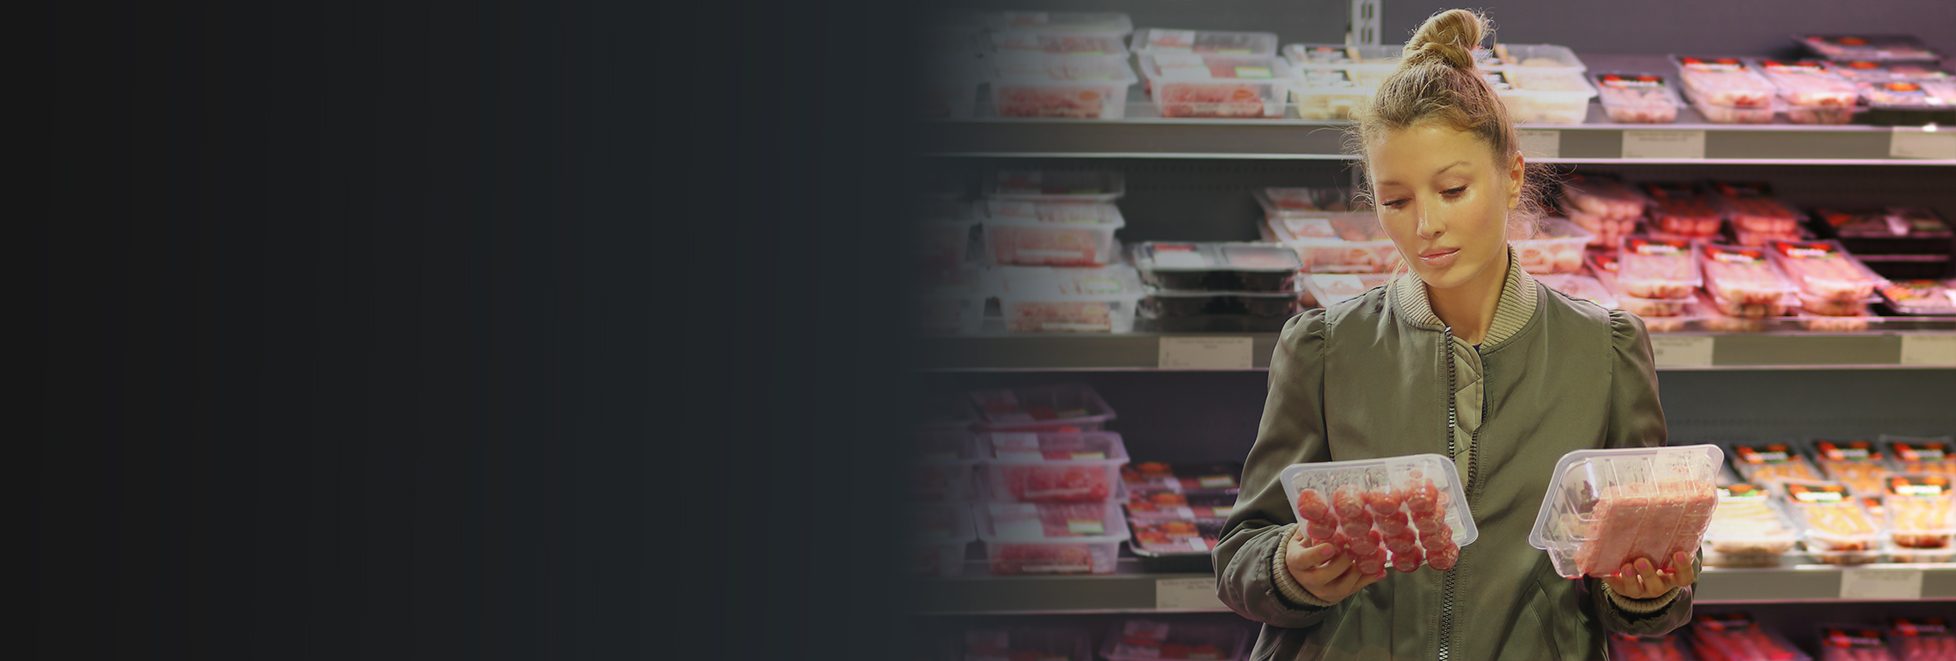 donna che acquista carne in imballaggio case ready al supermercato